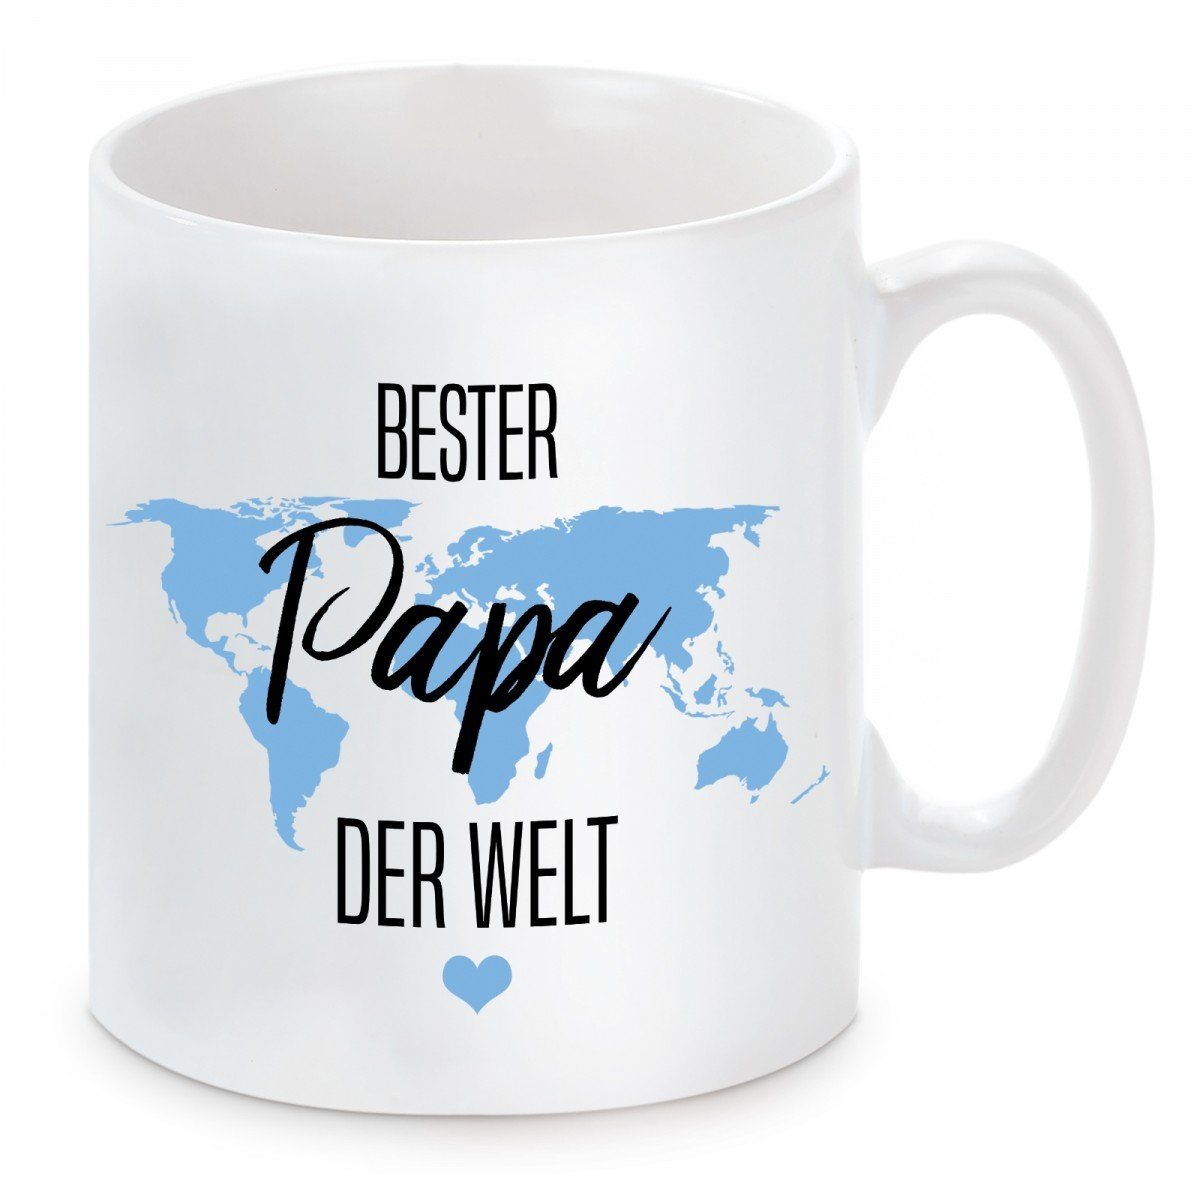 Keramik, mikrowellengeeignet Papa Motiv Bester und spülmaschinenfest Herzbotschaft Welt, Tasse mit Kaffeetasse der Kaffeebecher